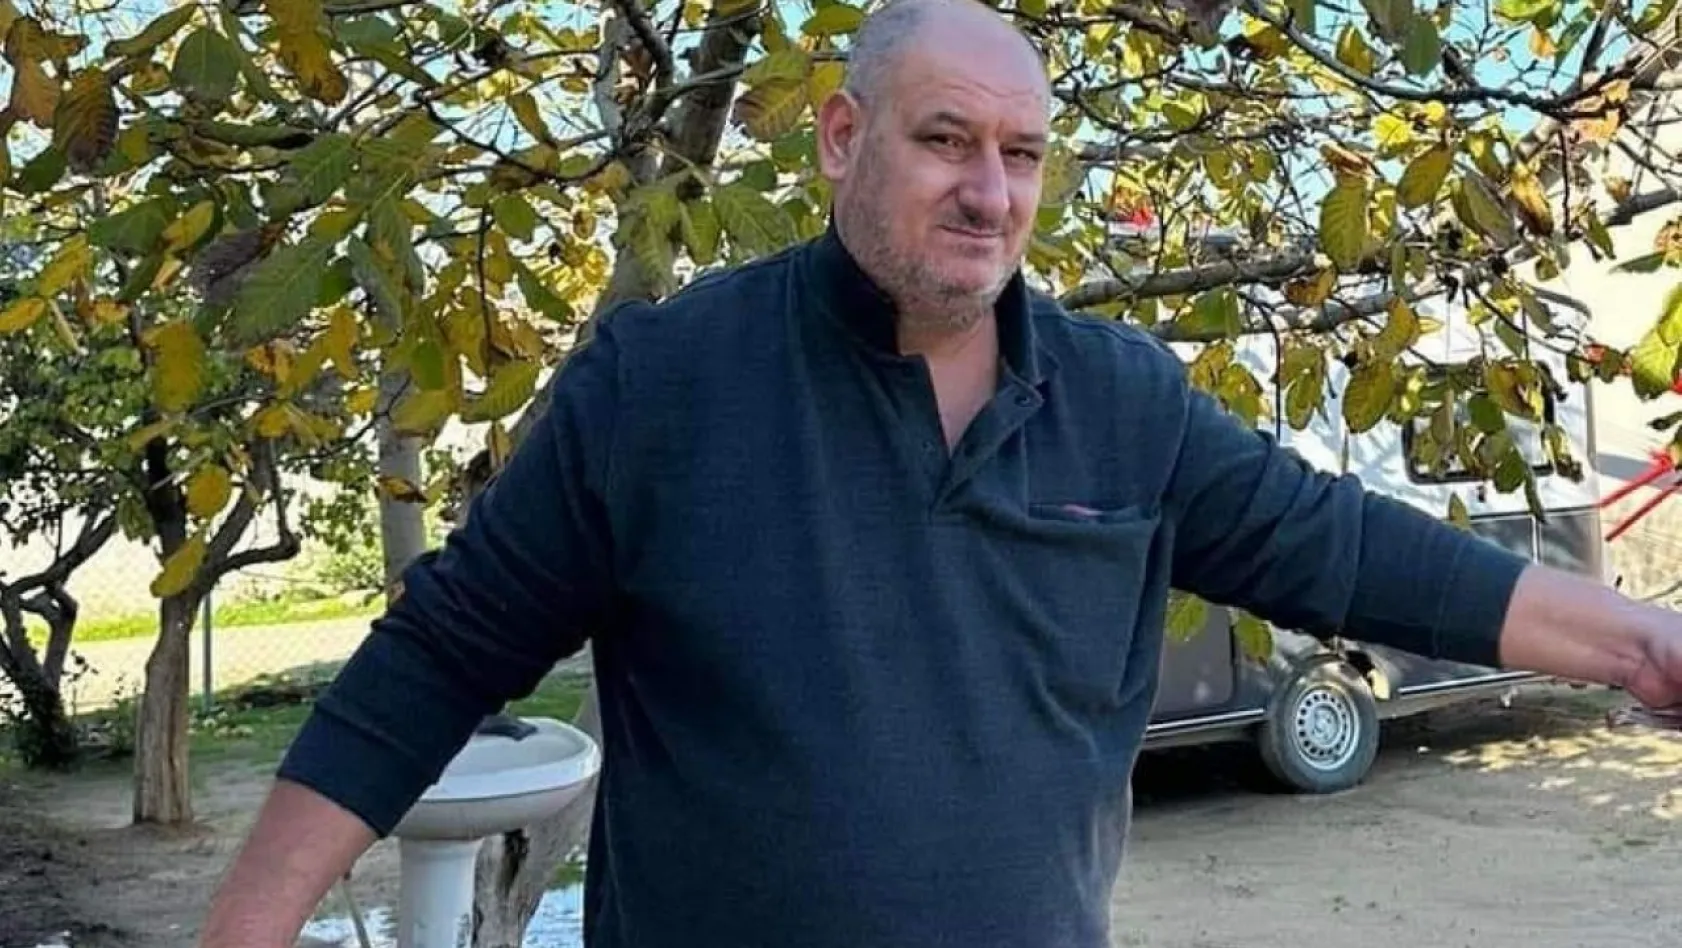 İpsala'da Tarımsal Kalkınma Kooperatifi Başkanı tartıştığı kişi tarafından öldürüldü